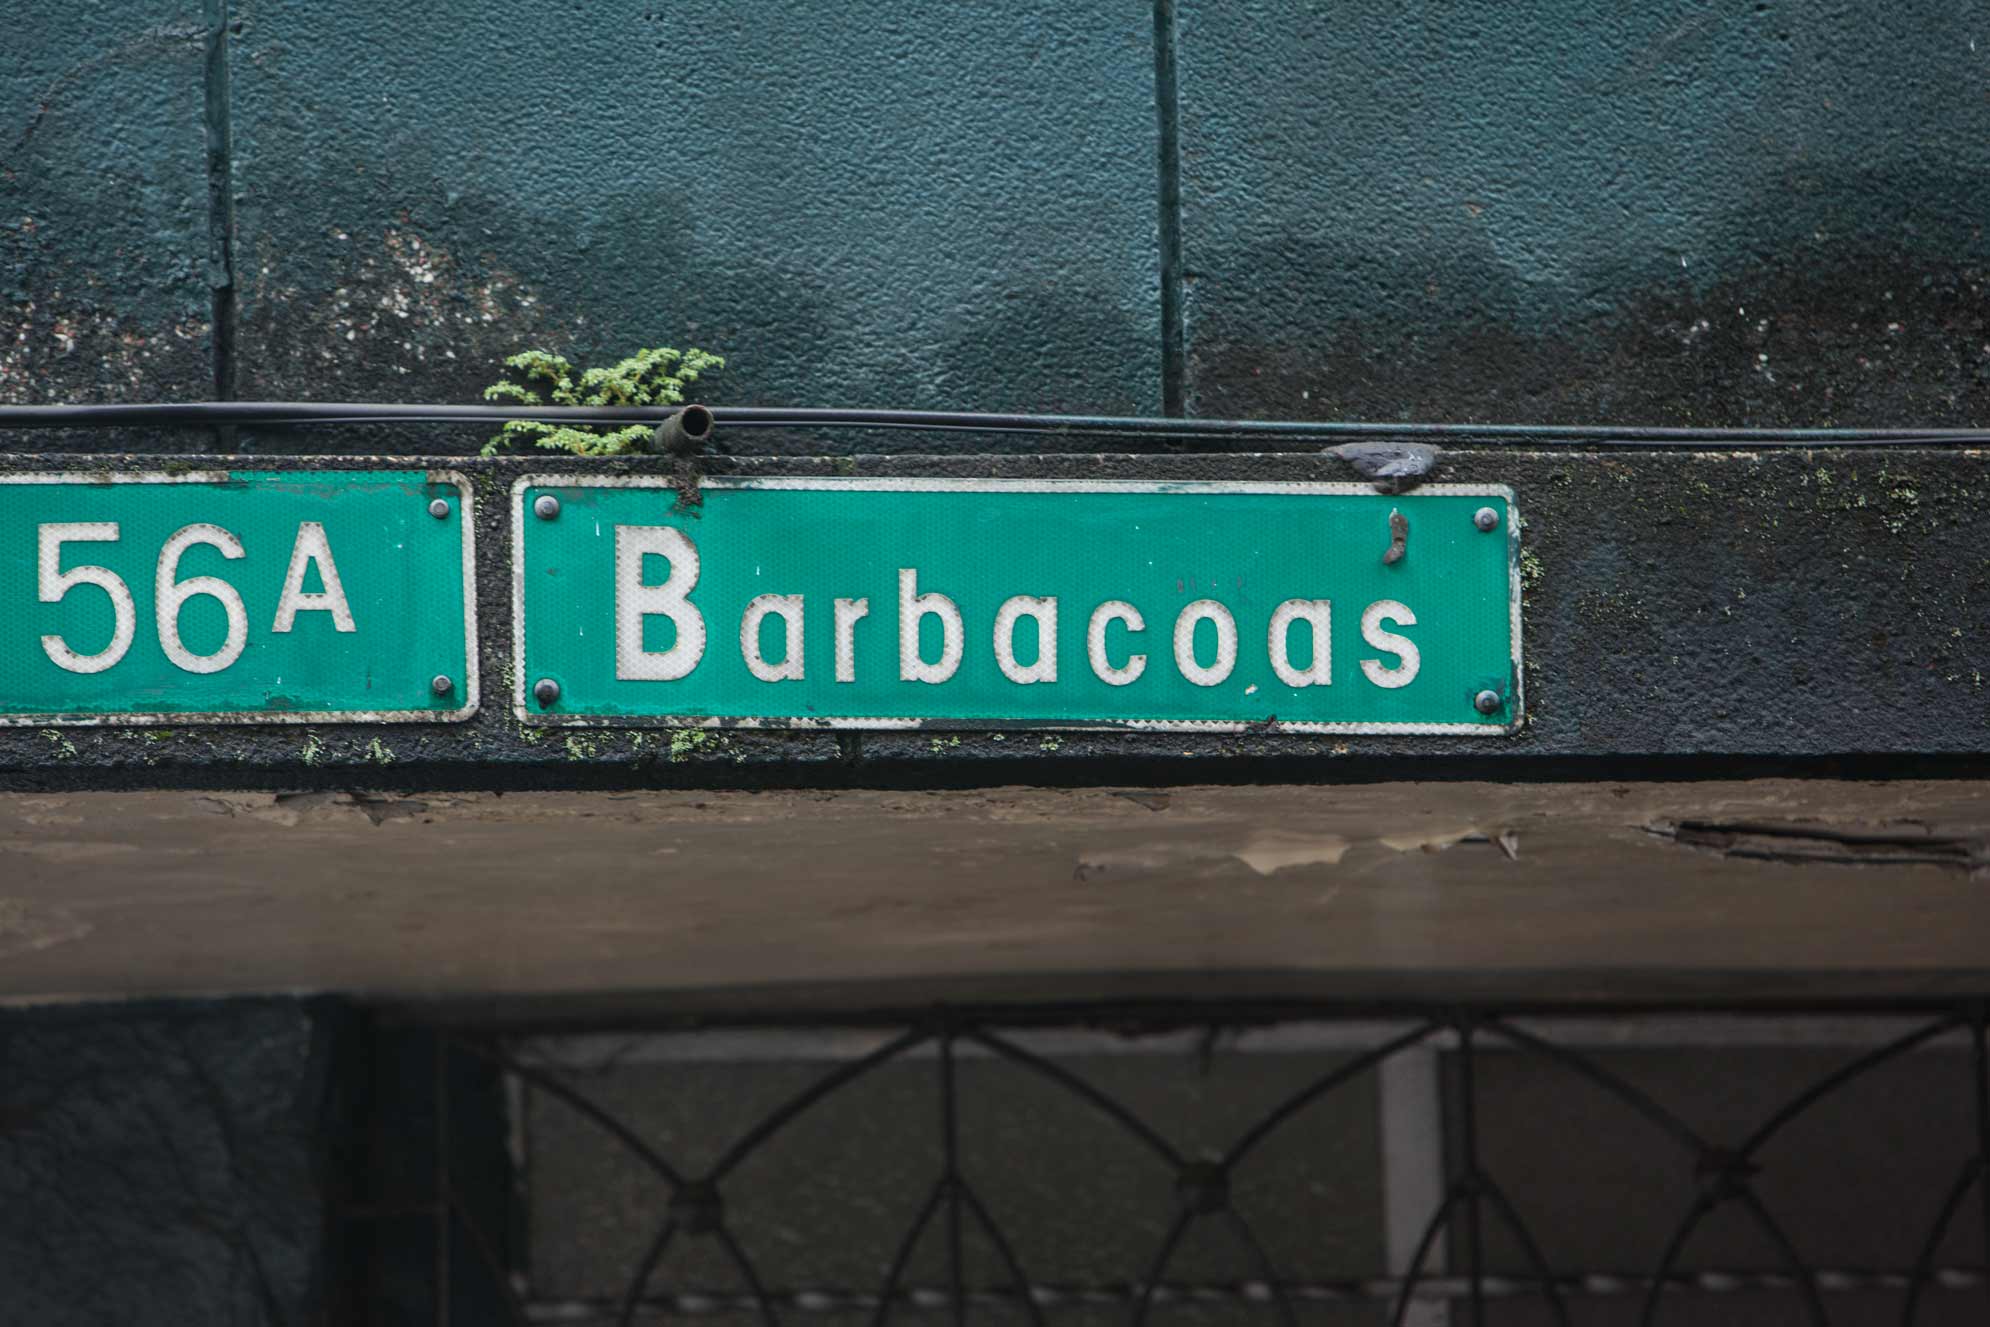 Paseo Barbacoas